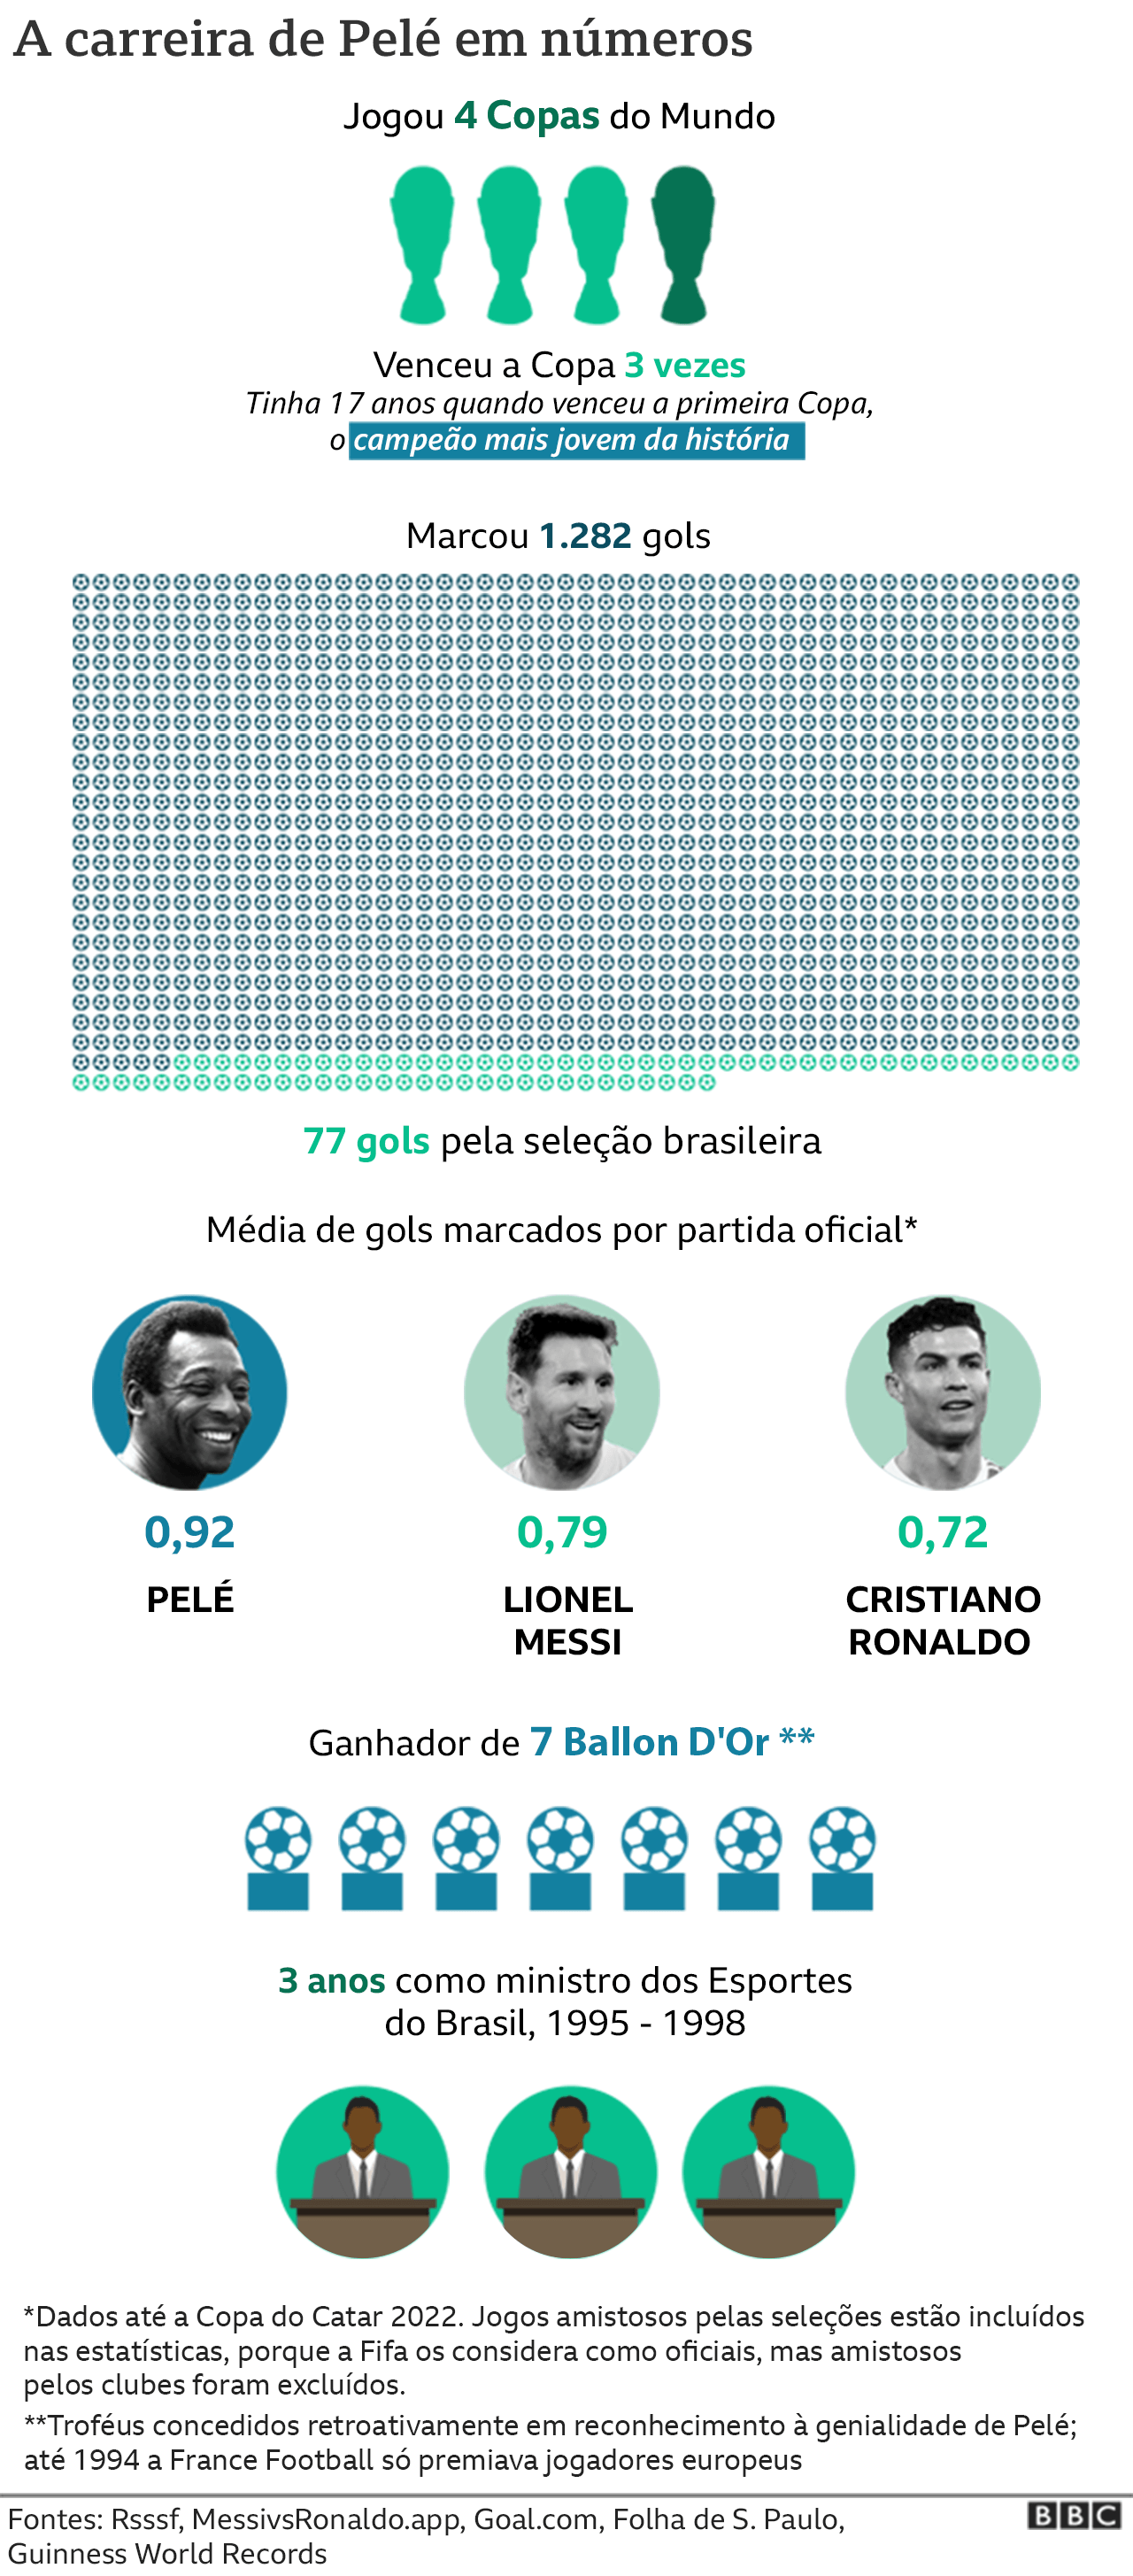 Números da carreira de Pelé